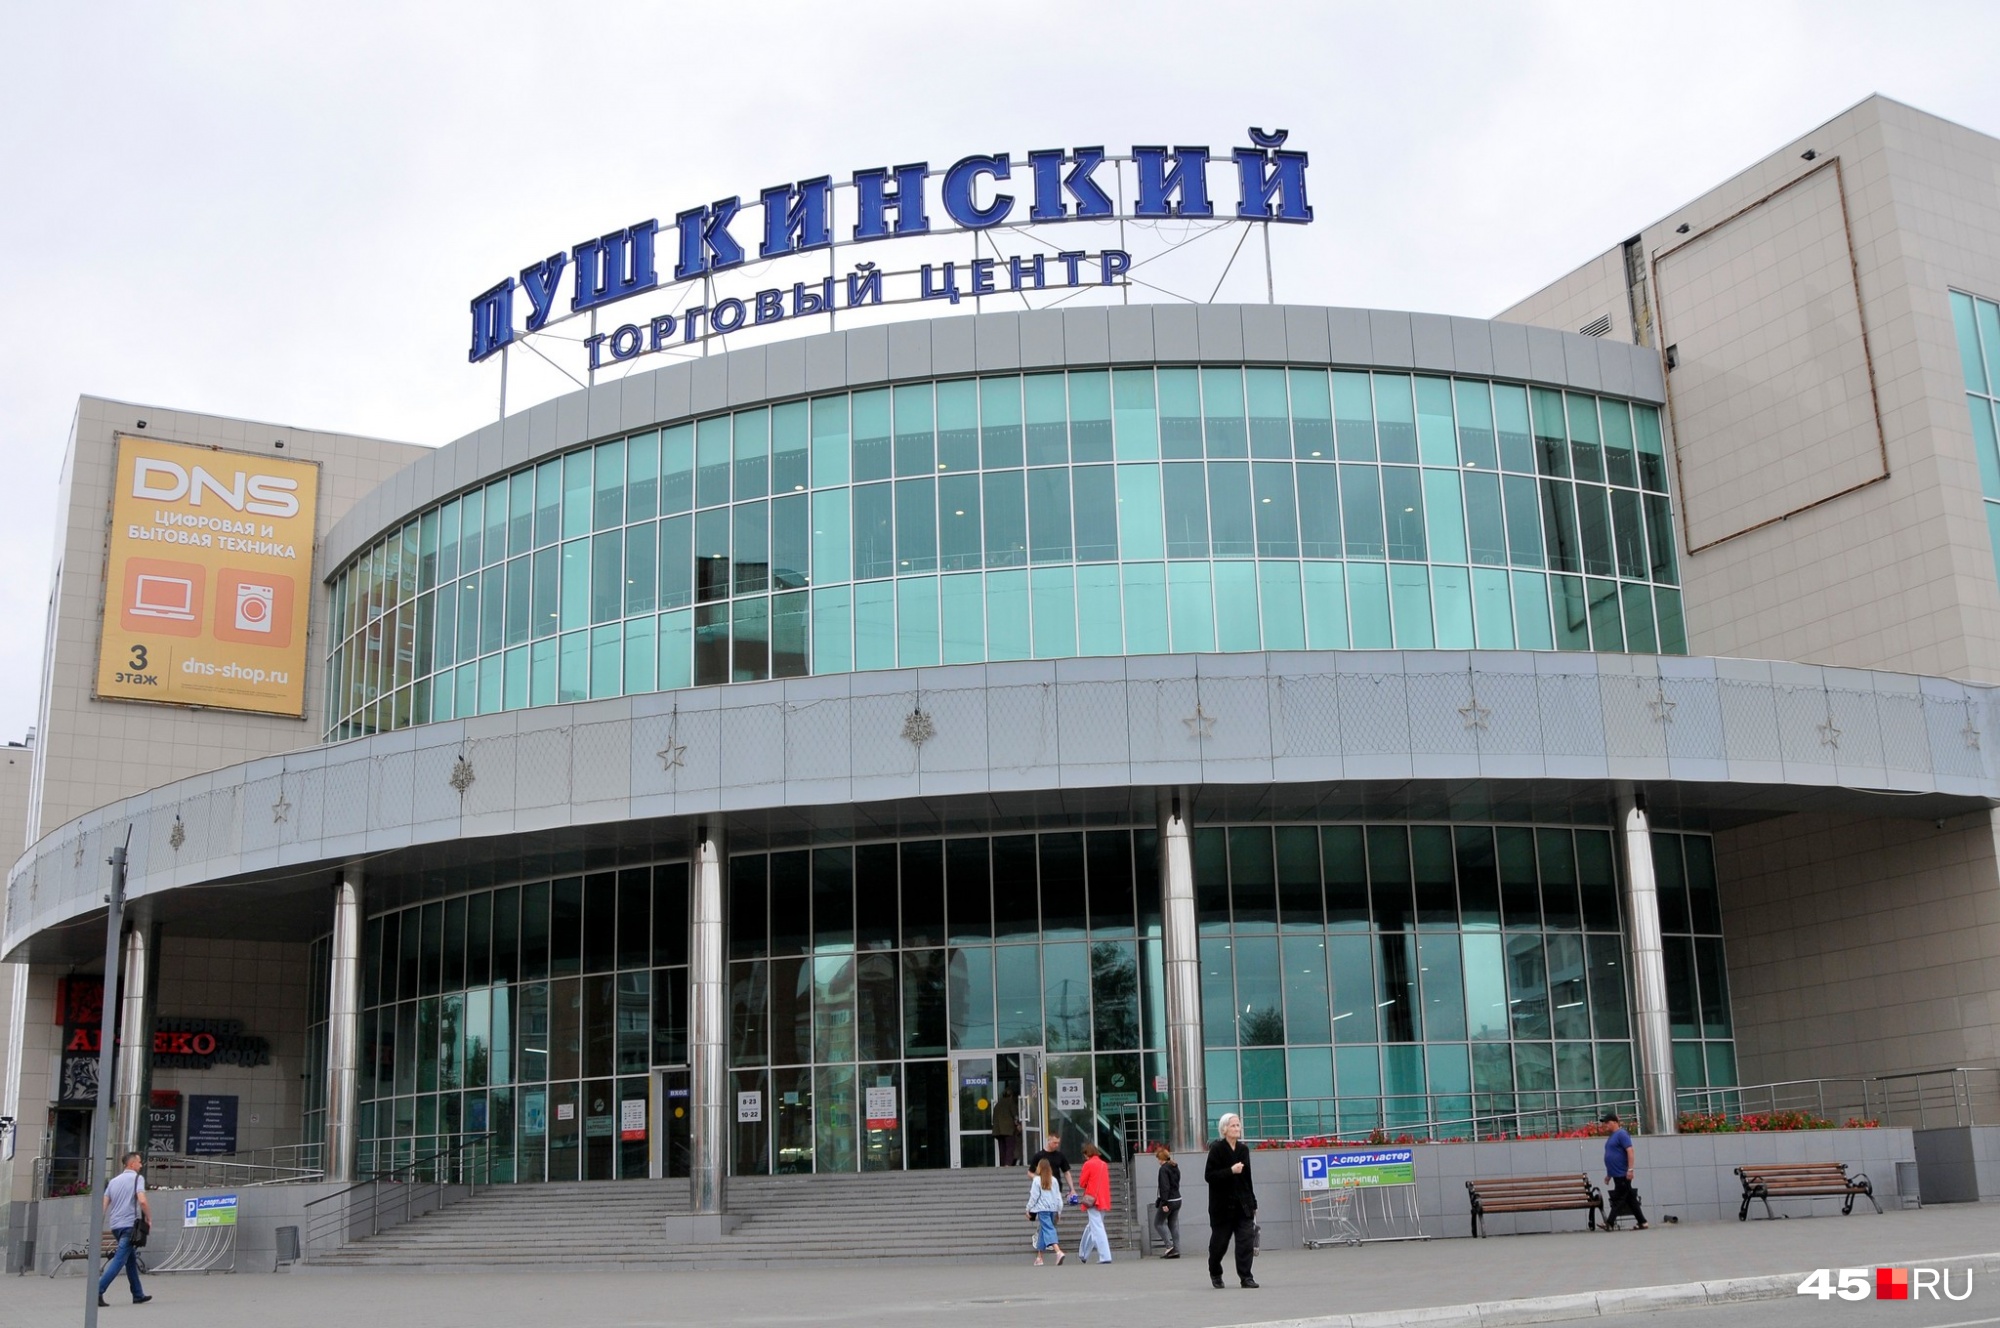 ТРЦ «Пушкинский» пользуется популярностью из-за своего расположения. Он построен в районе трех парков